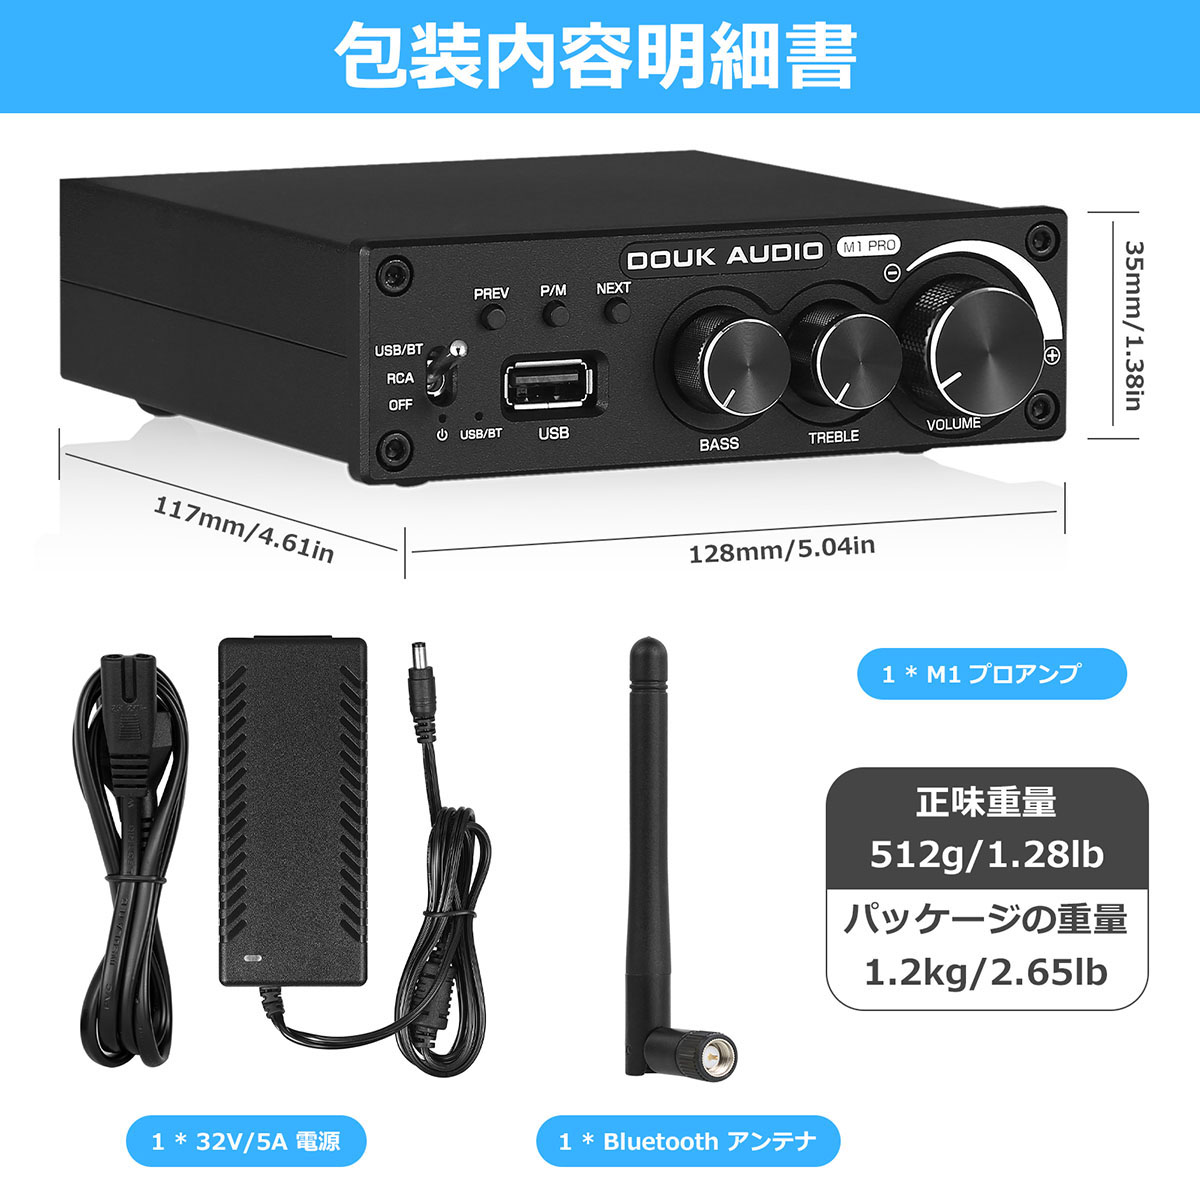 M1 PRO Hi-Fi 320W Bluetooth 5.0 パワーアンプ ステレオ サブ 